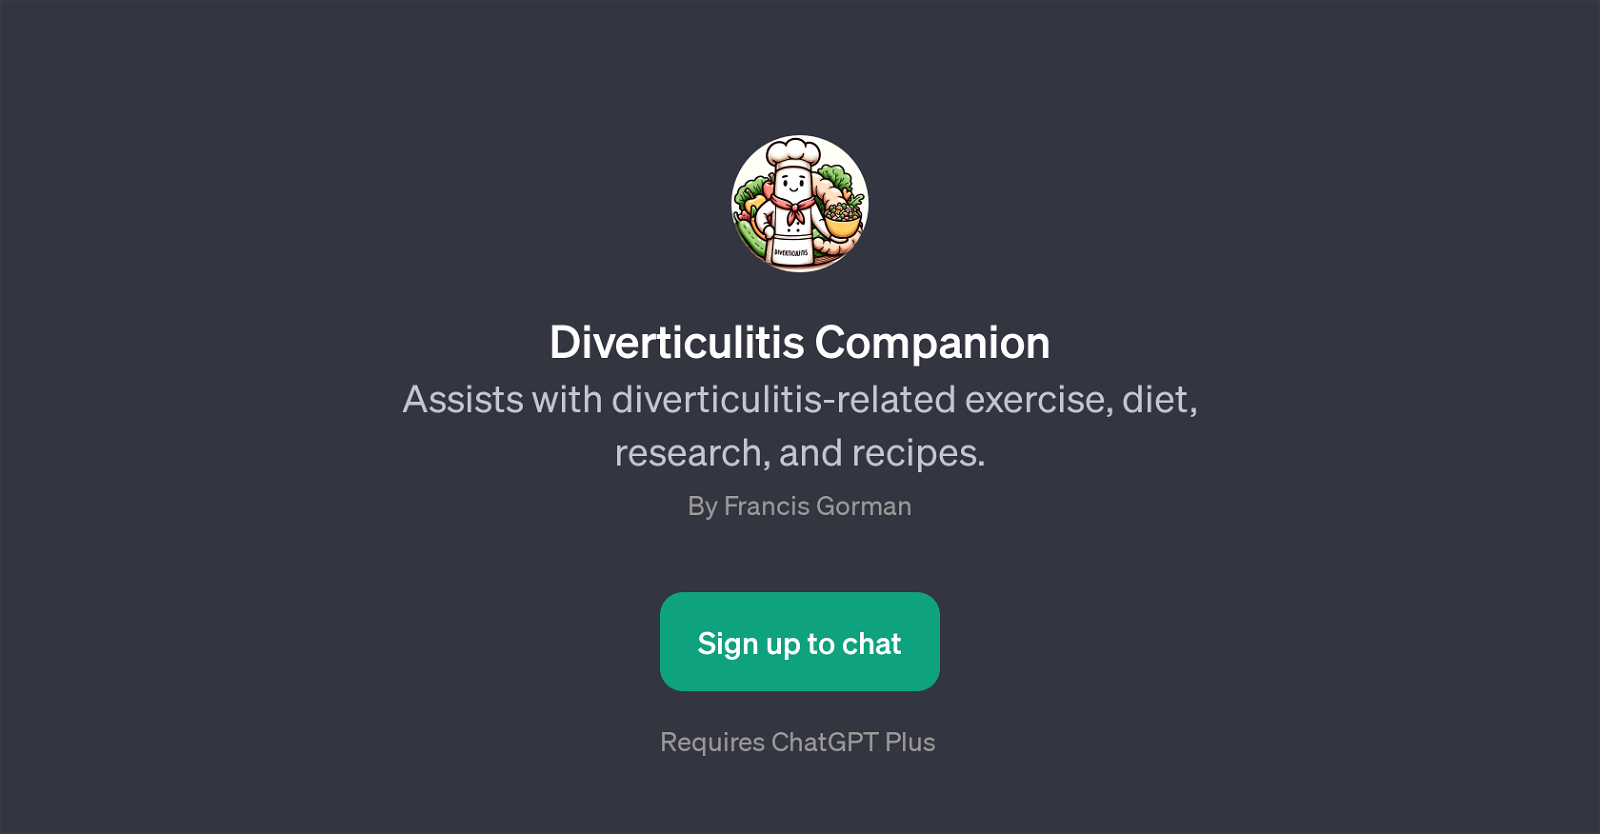 Diverticulitis Companion website